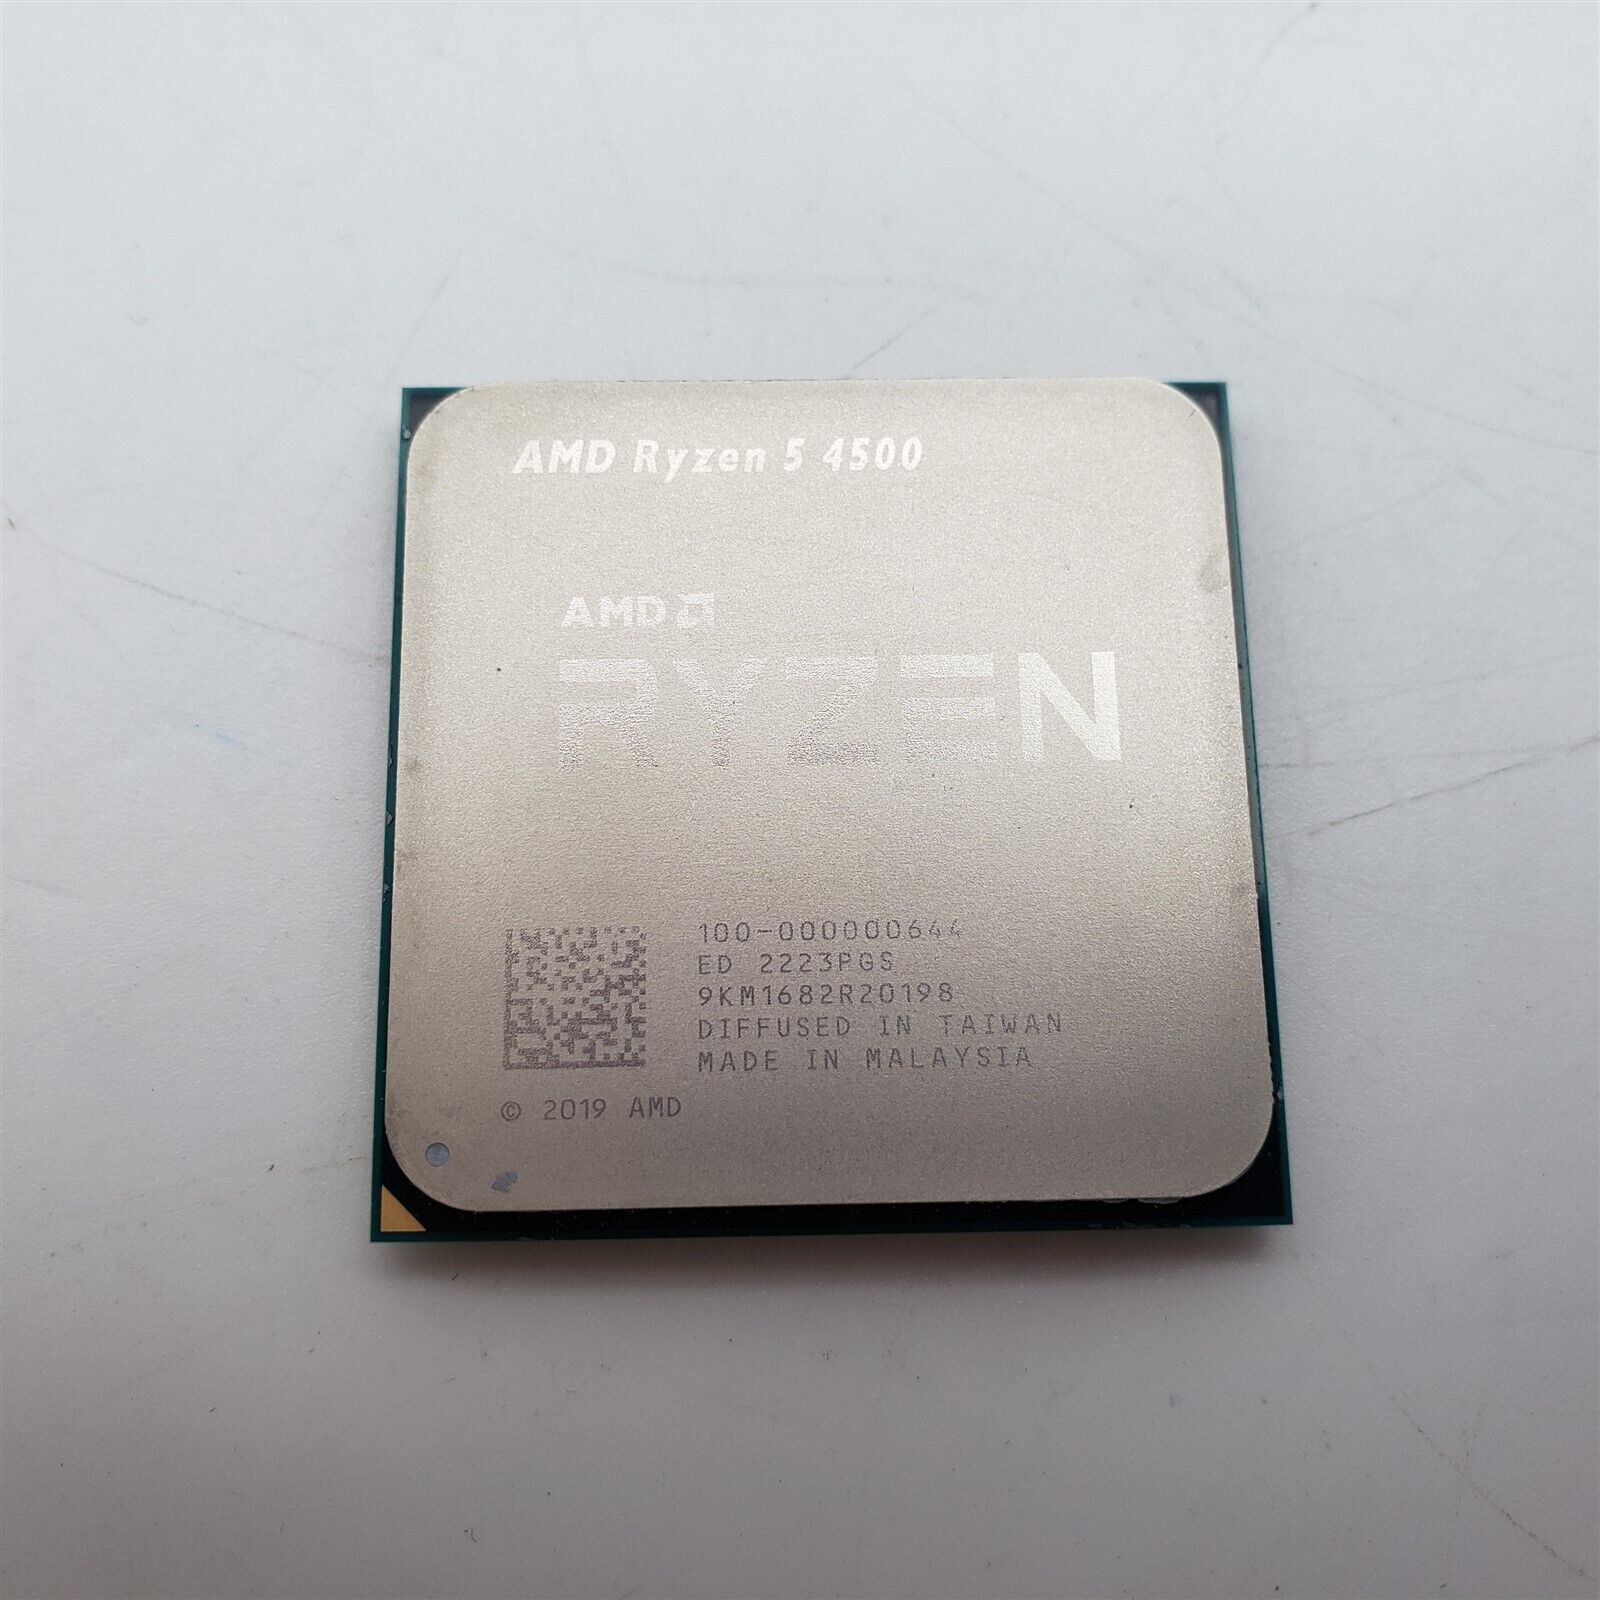 AMD Ryzen 5 4500 6-Core, 12-Thread Unlocked Desktop Processor [AMD Ryzen 5 4500]